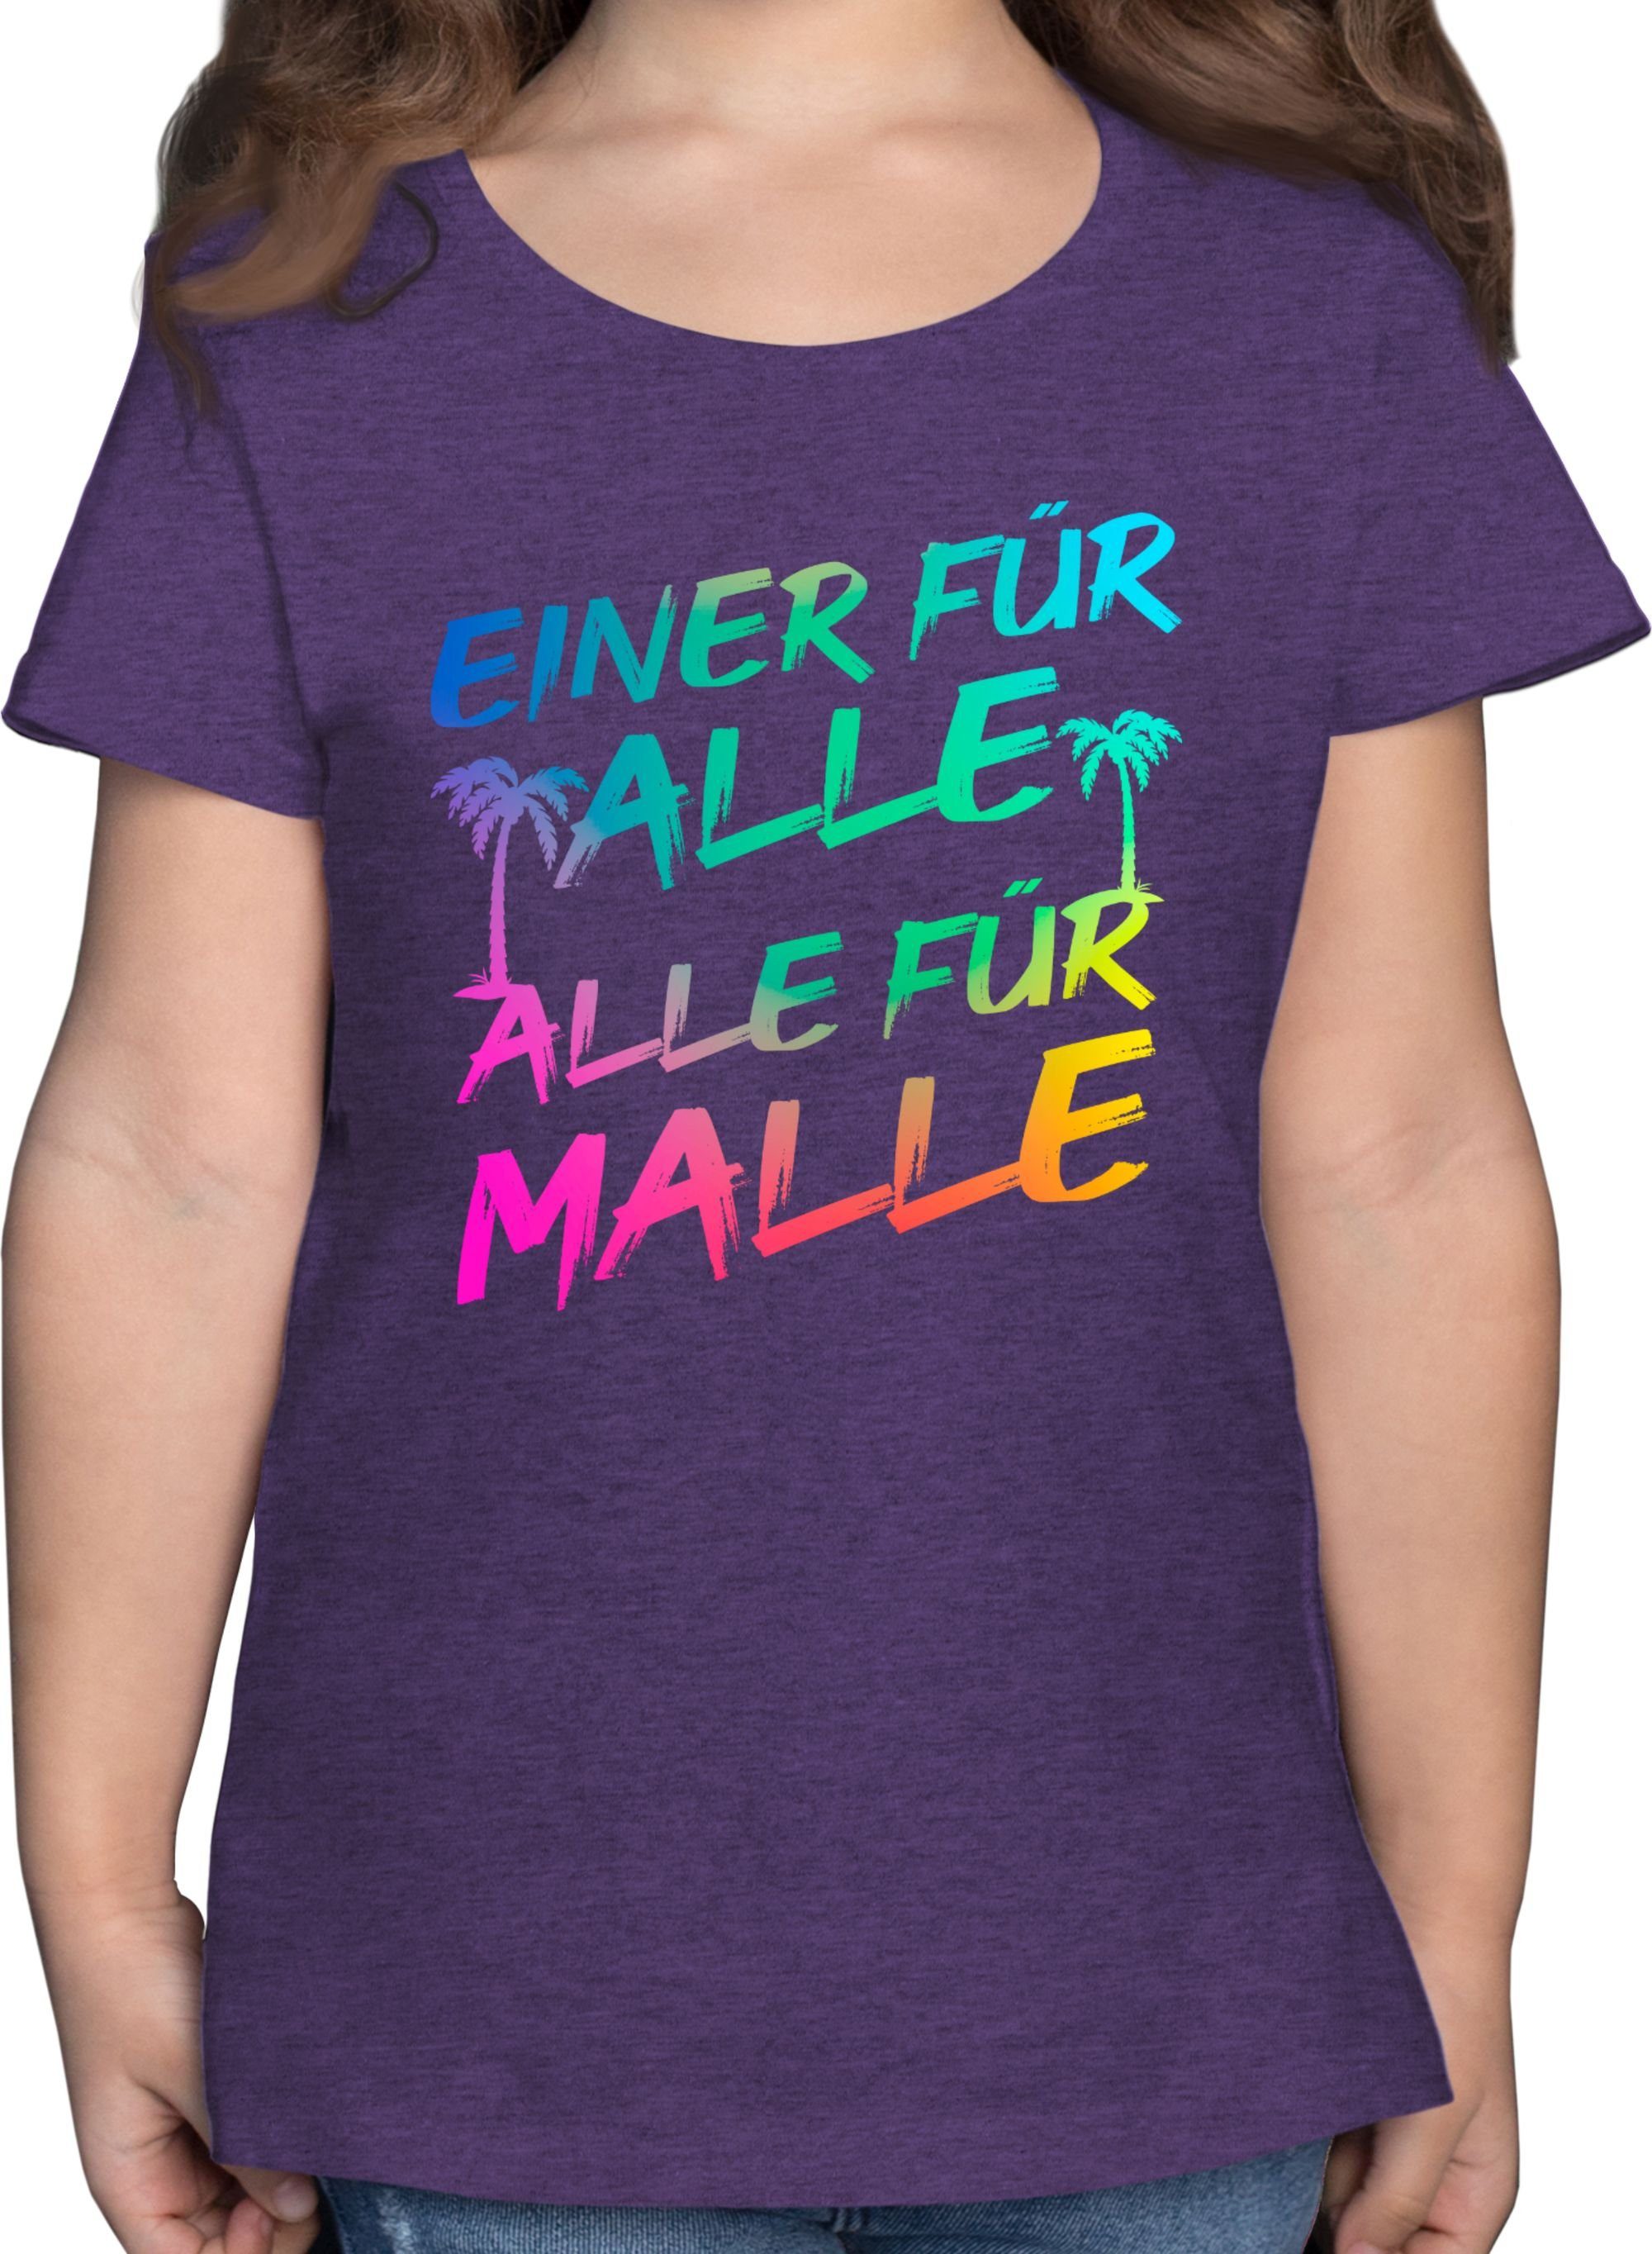 Shirtracer T-Shirt Malle für Alle - Einer für alle Alle für Malle Sommerurlaub Mädchen 1 Lila Meliert